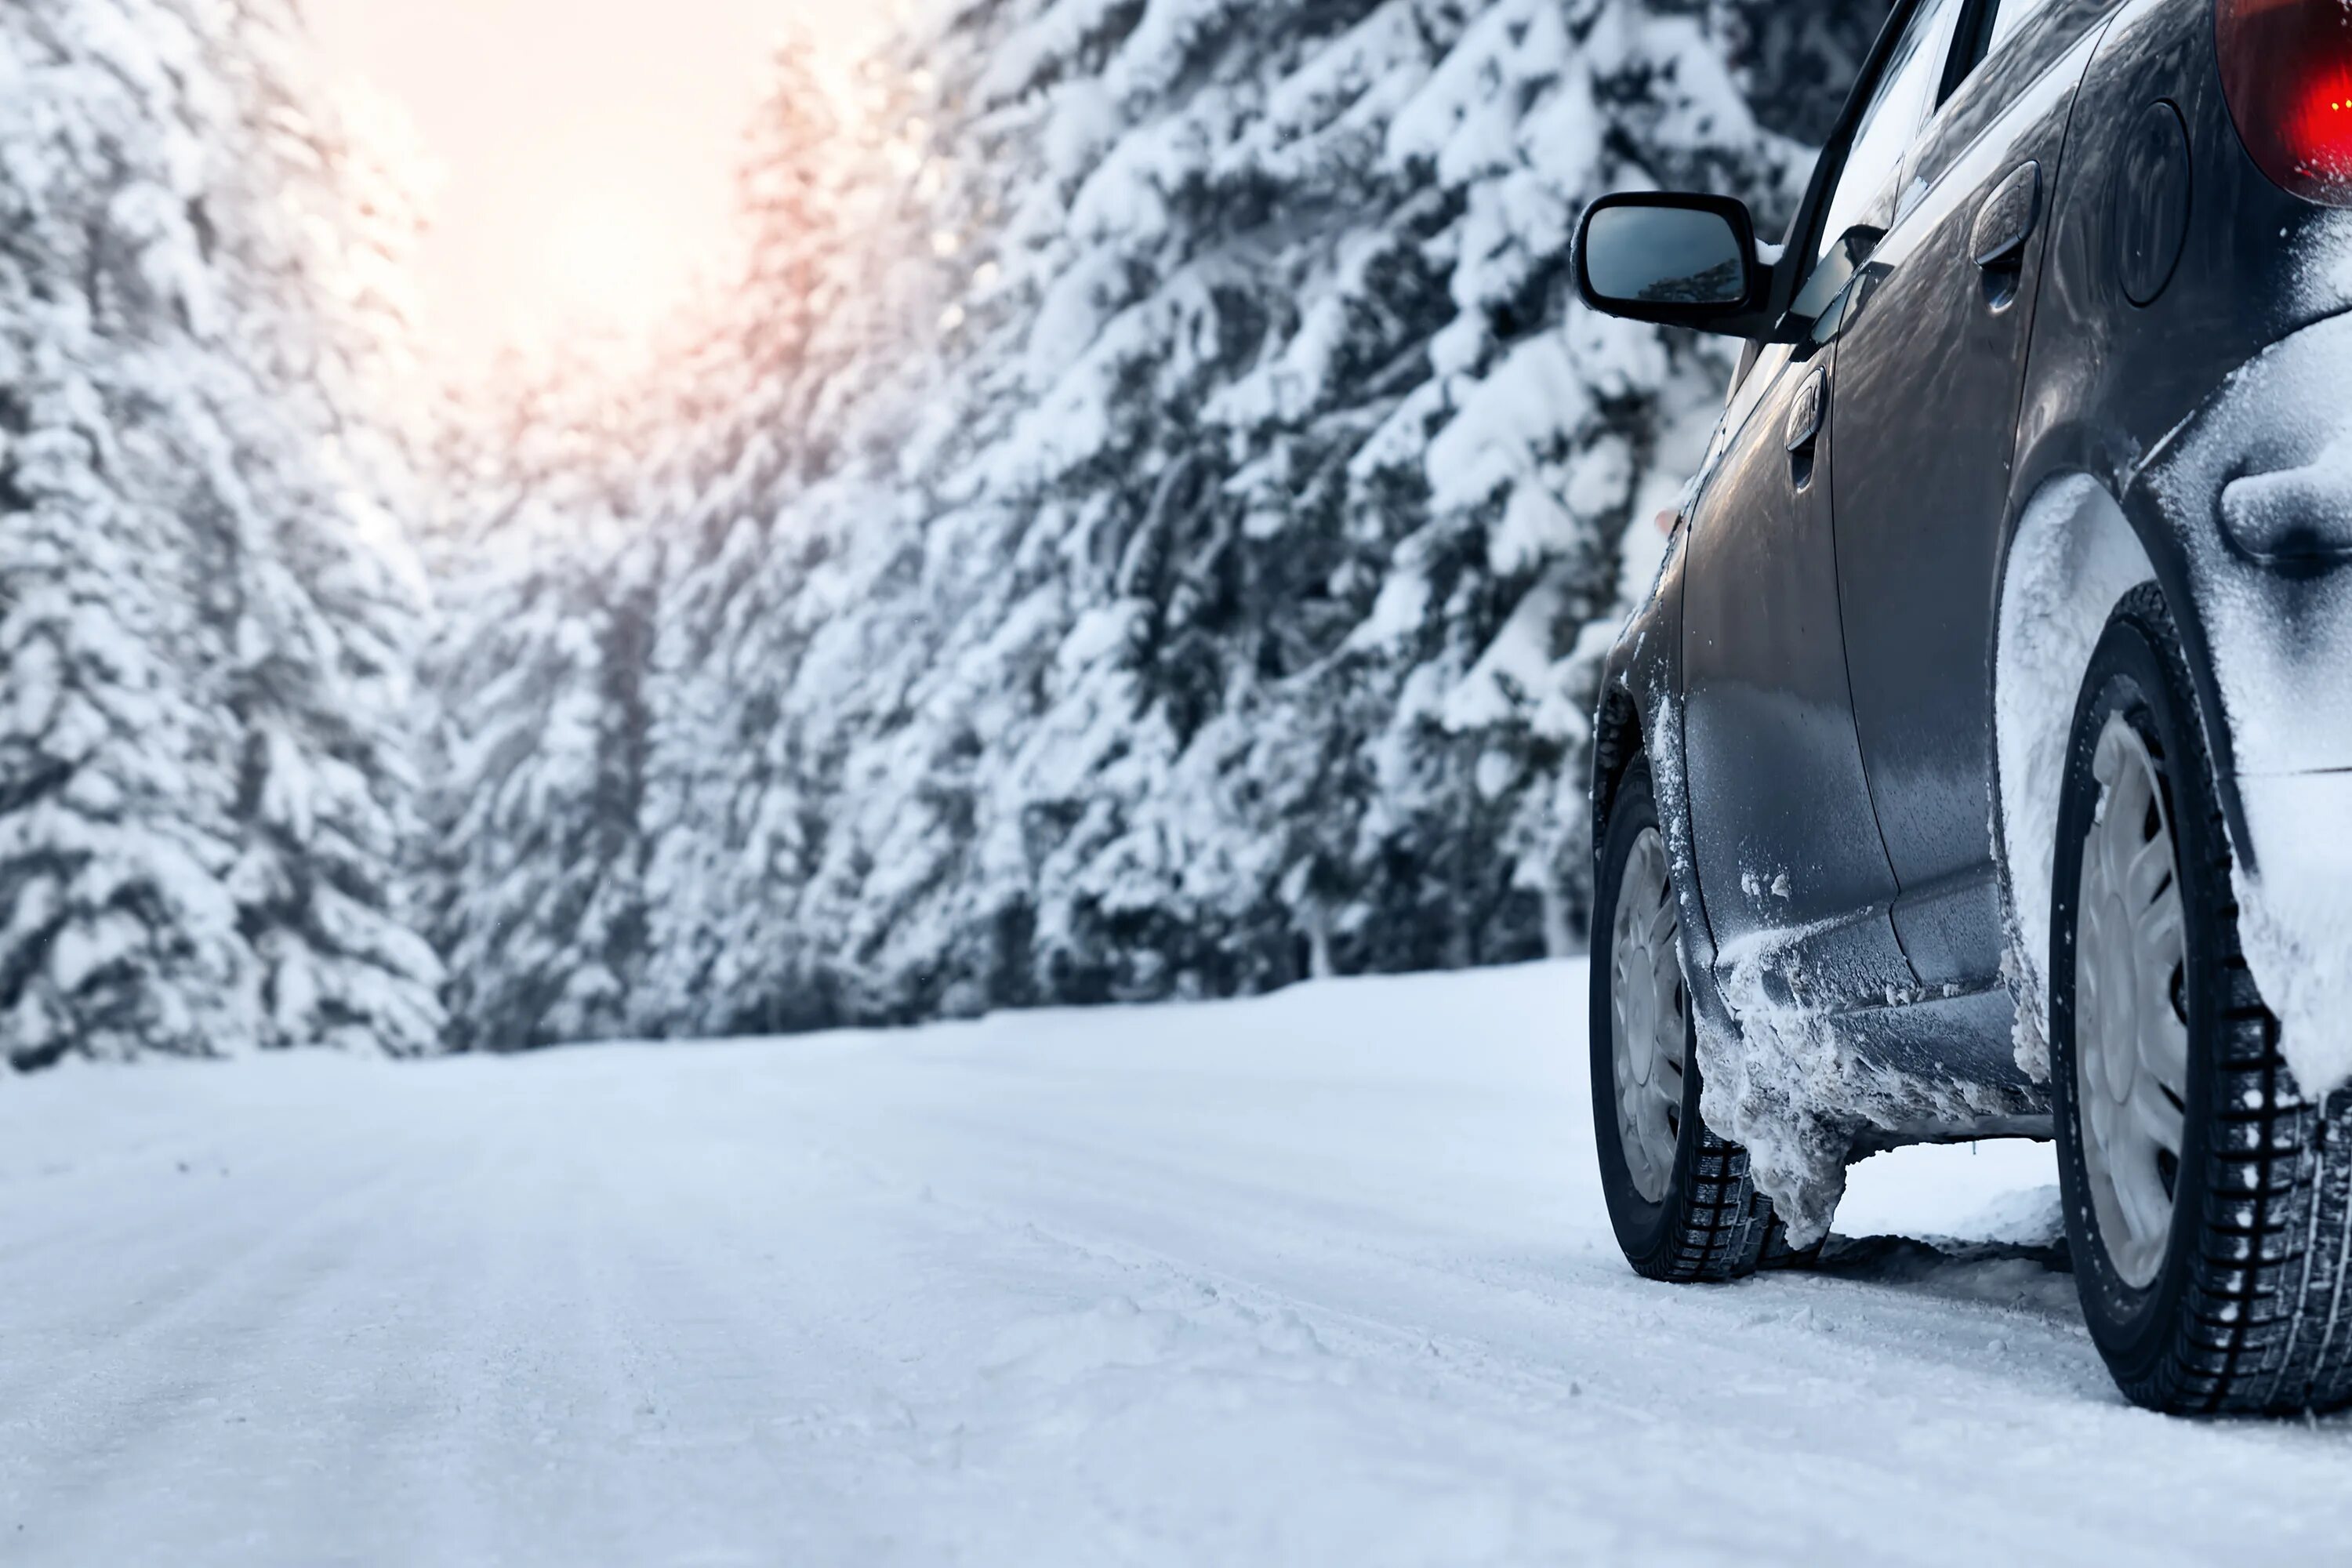 Машина зима. Машина зимой. Машина в снегу. Зима дорога машина. Машина снежка